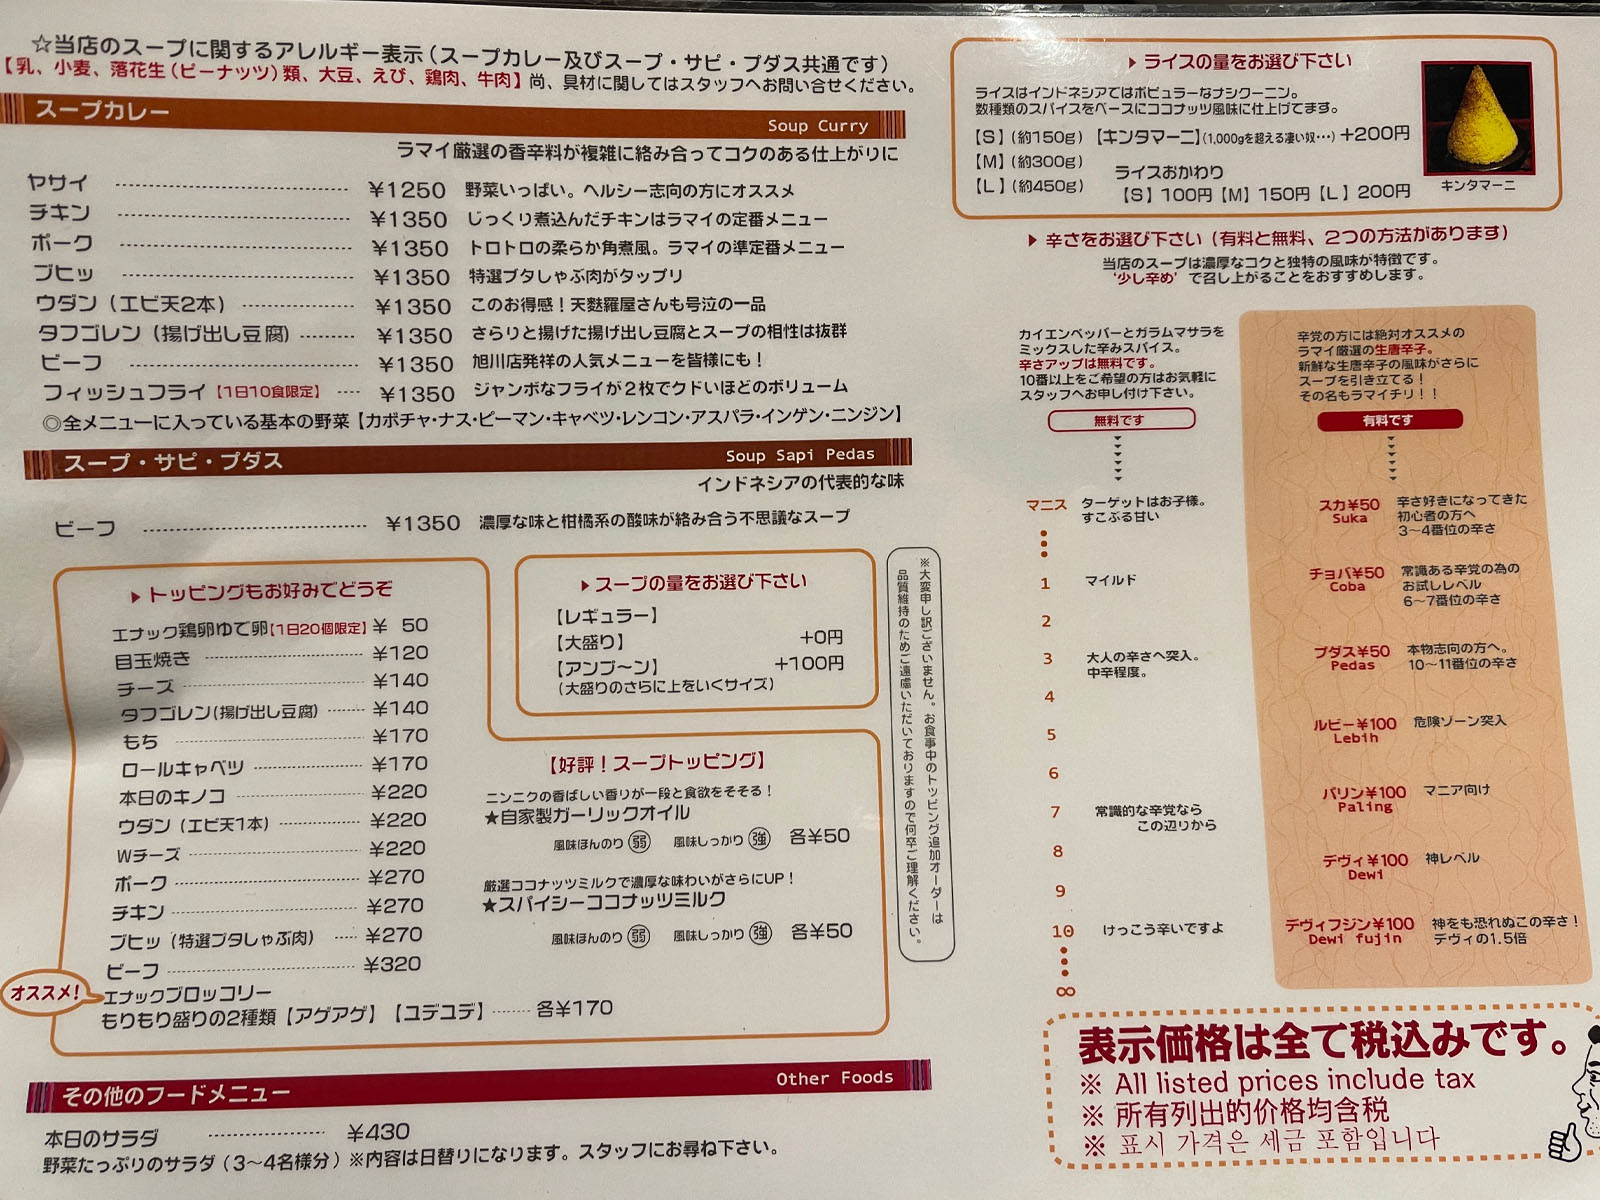 横浜のAsian Bar RAMAI(ラマイ)でポーク、フィッシュフライスープカレー食べた！